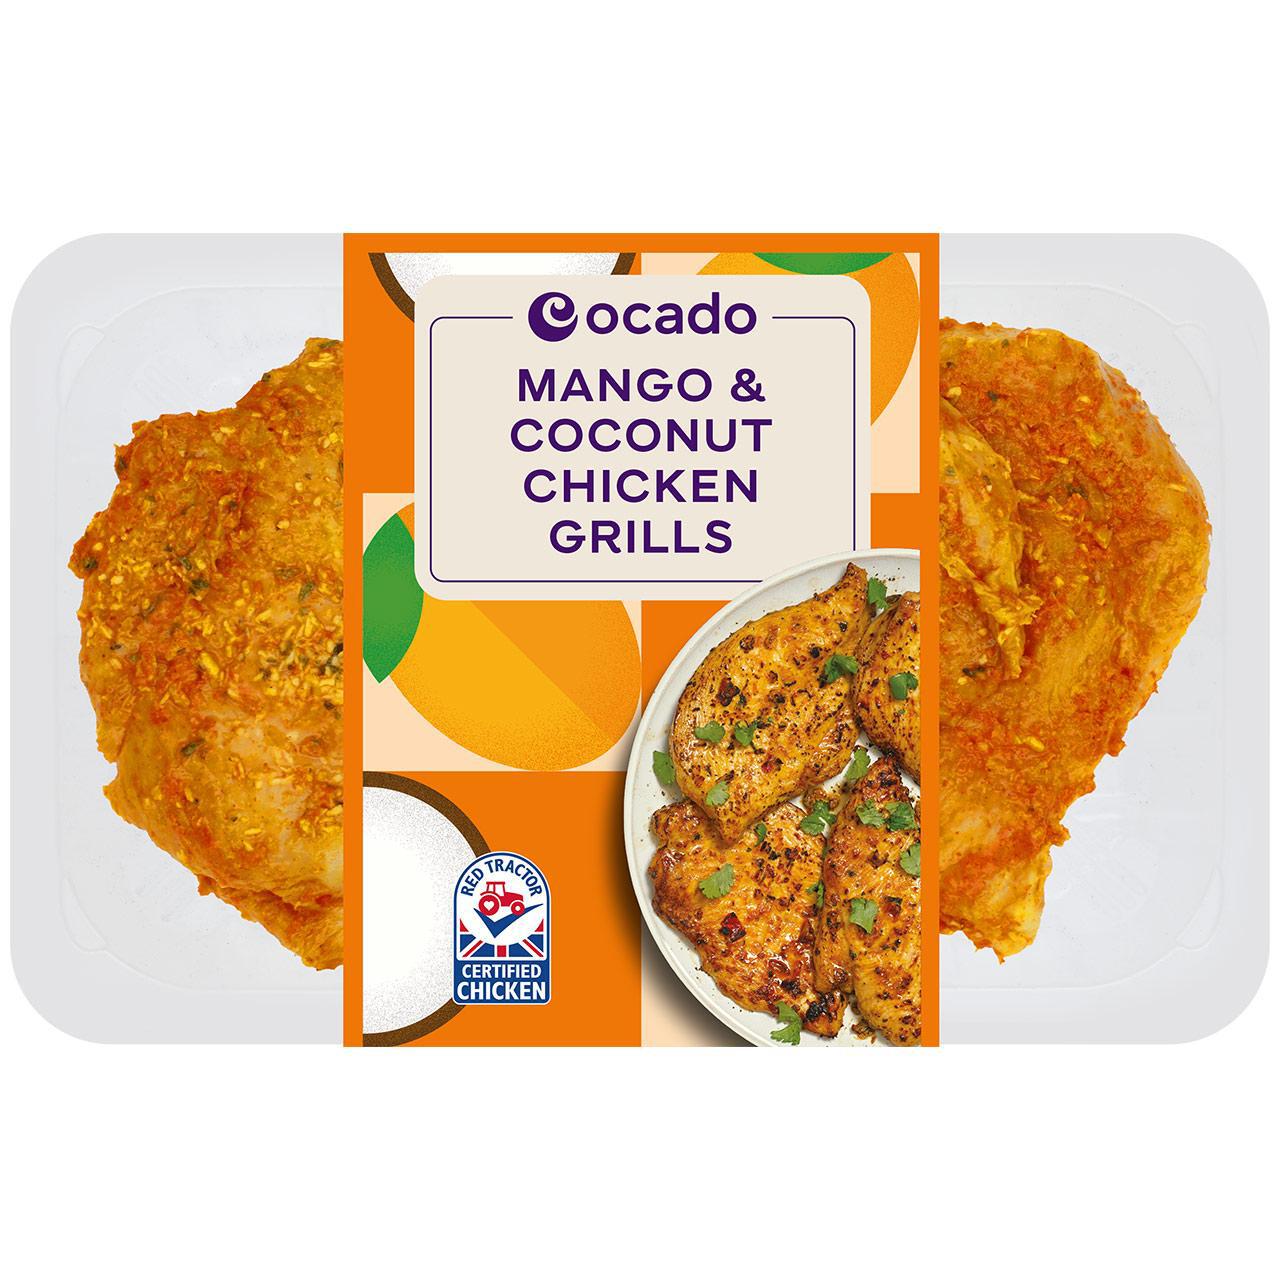 Ocado Mango & Coconut Chicken Grills 330g